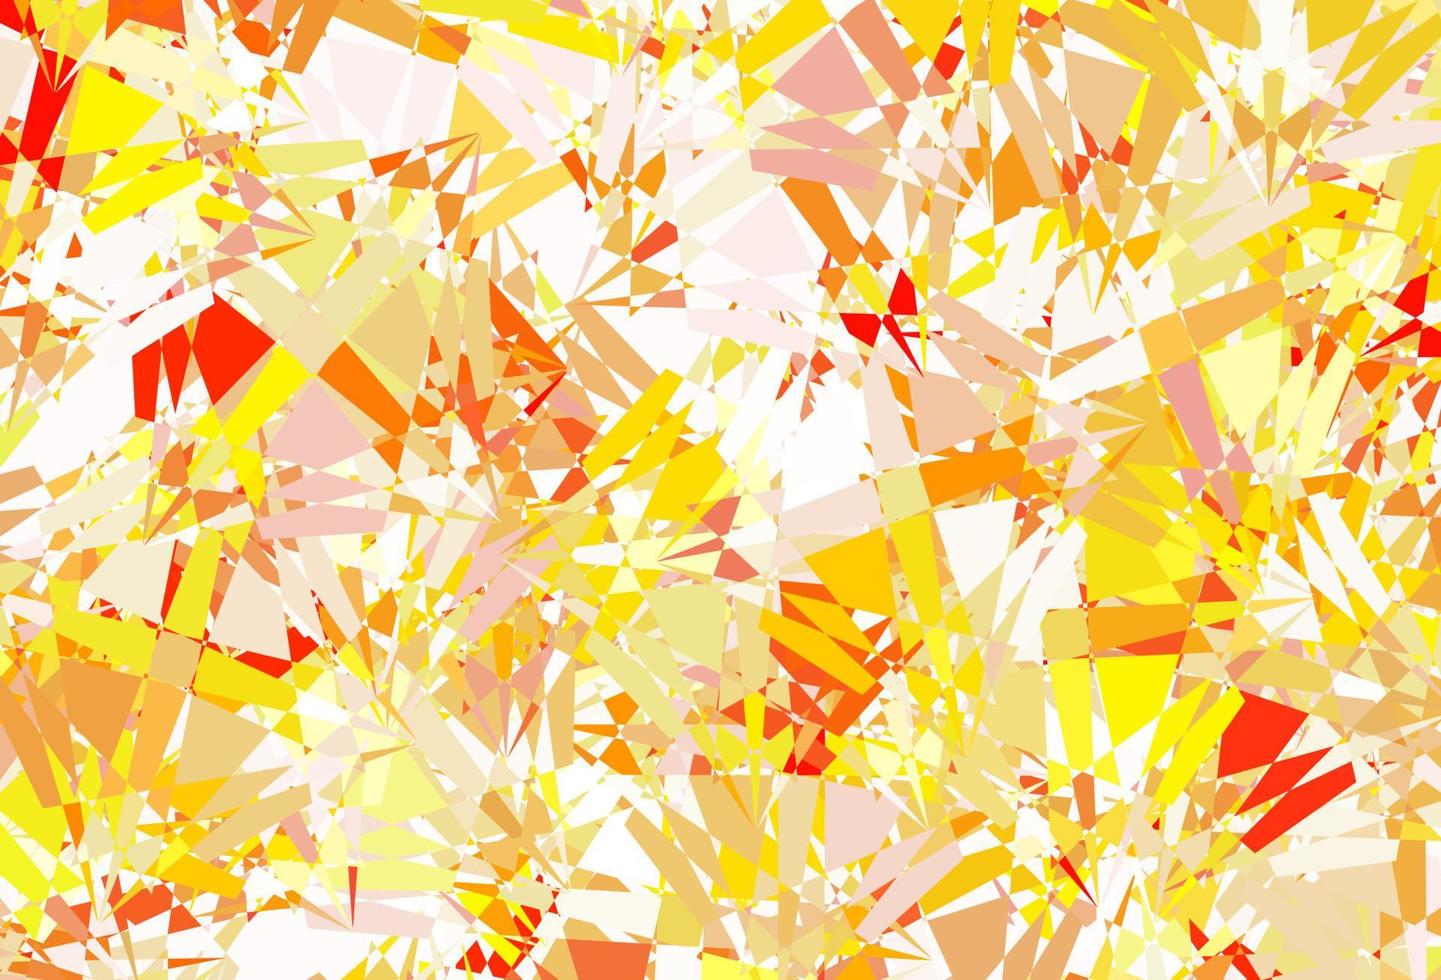 ljusrosa, gul vektorbakgrund med trianglar, linjer. vektor